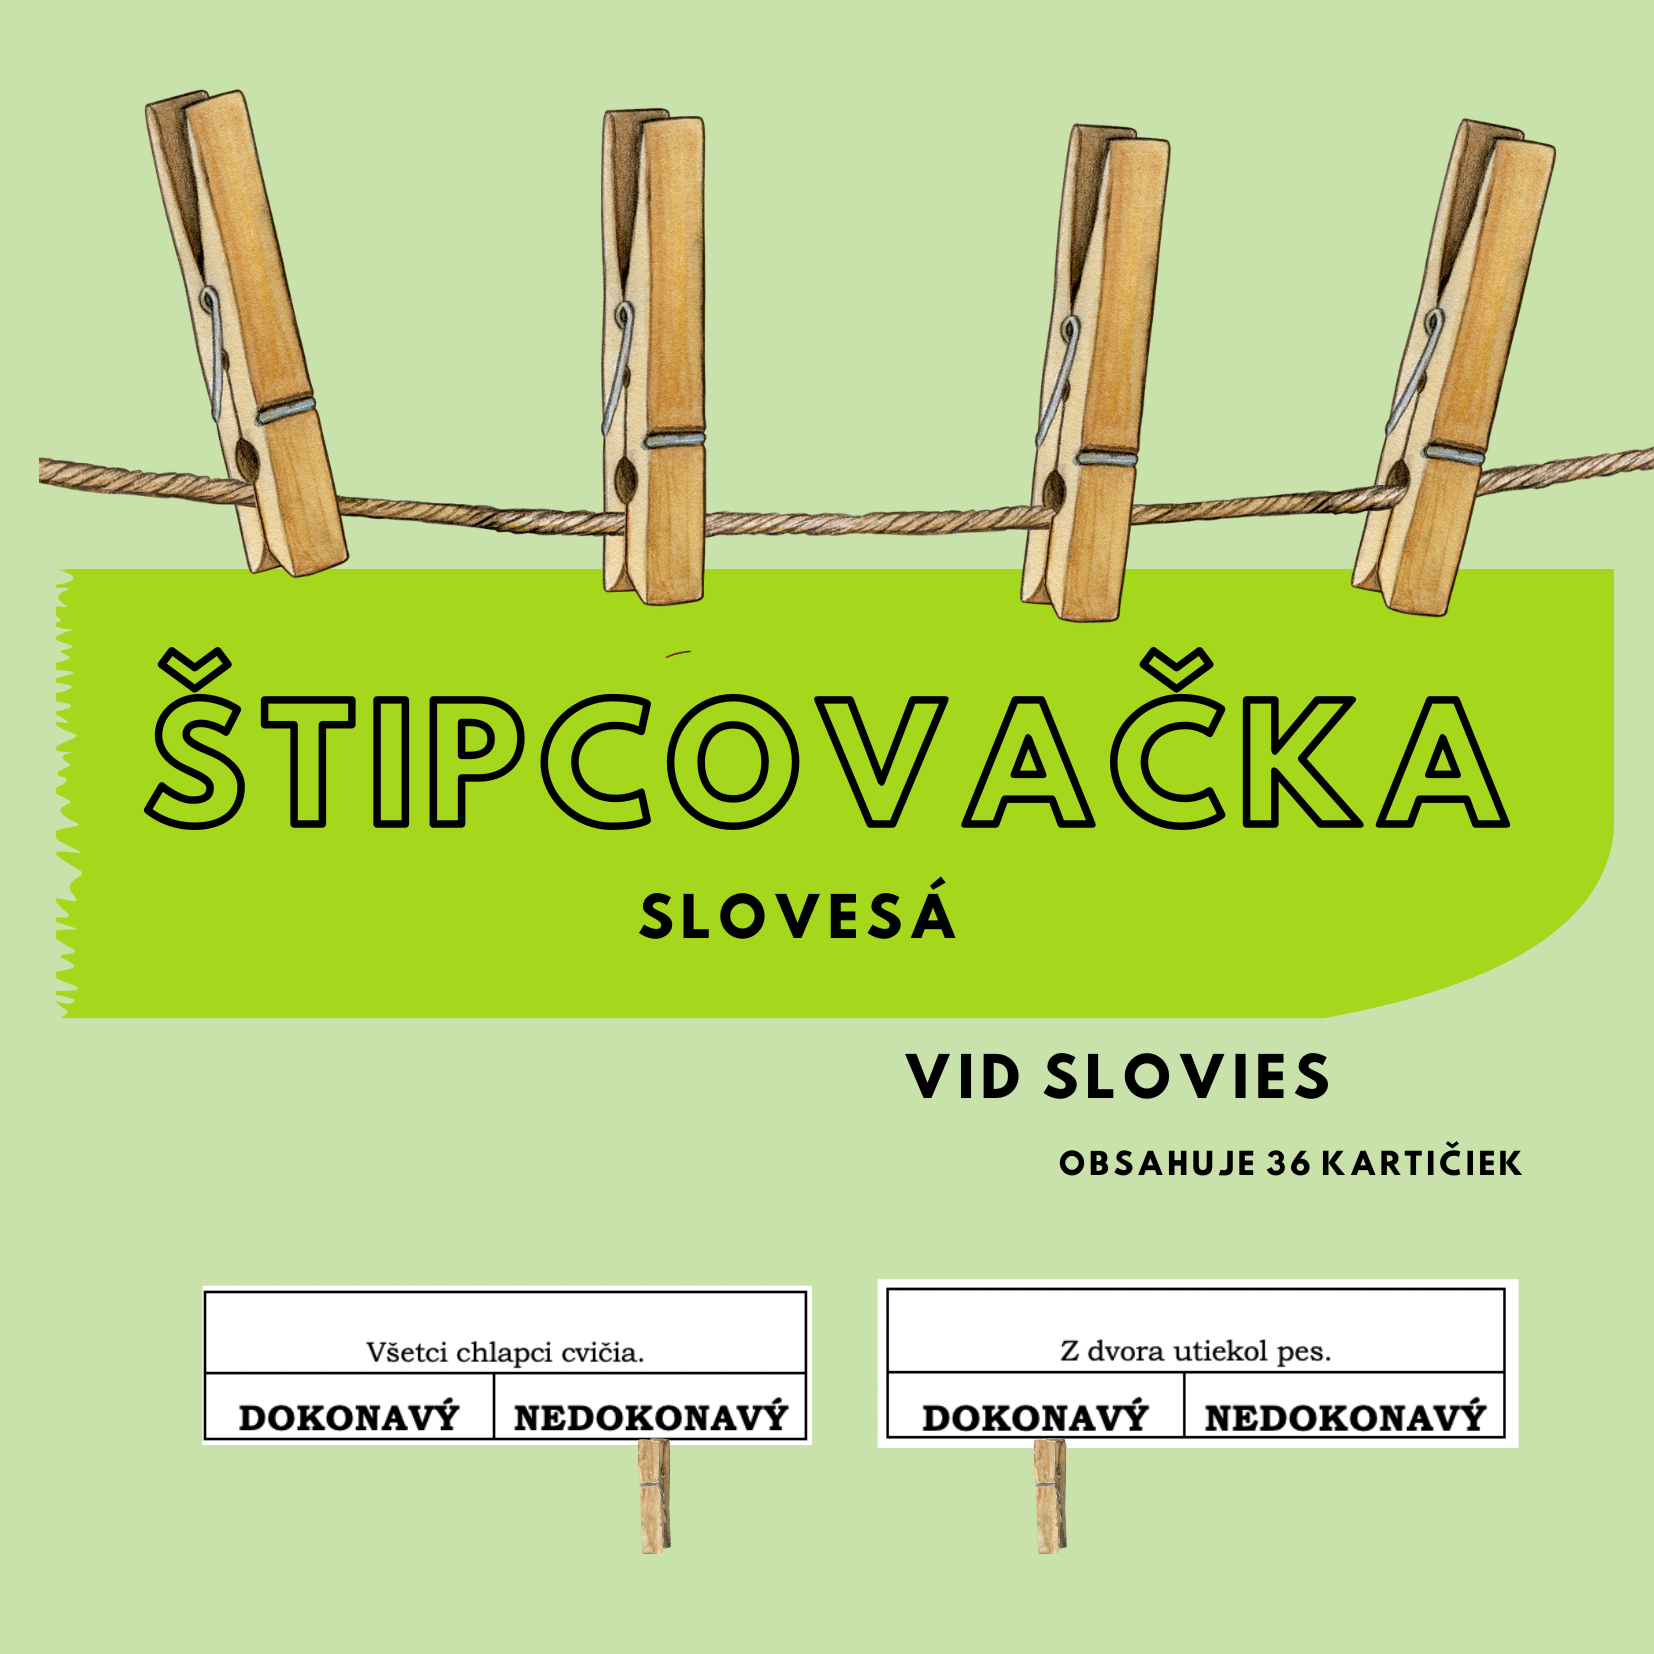 ŠTIPCOVAČKA - Slovesá (dokonavé a nedokonavé slovesá) - Slovenský Jazyk ...